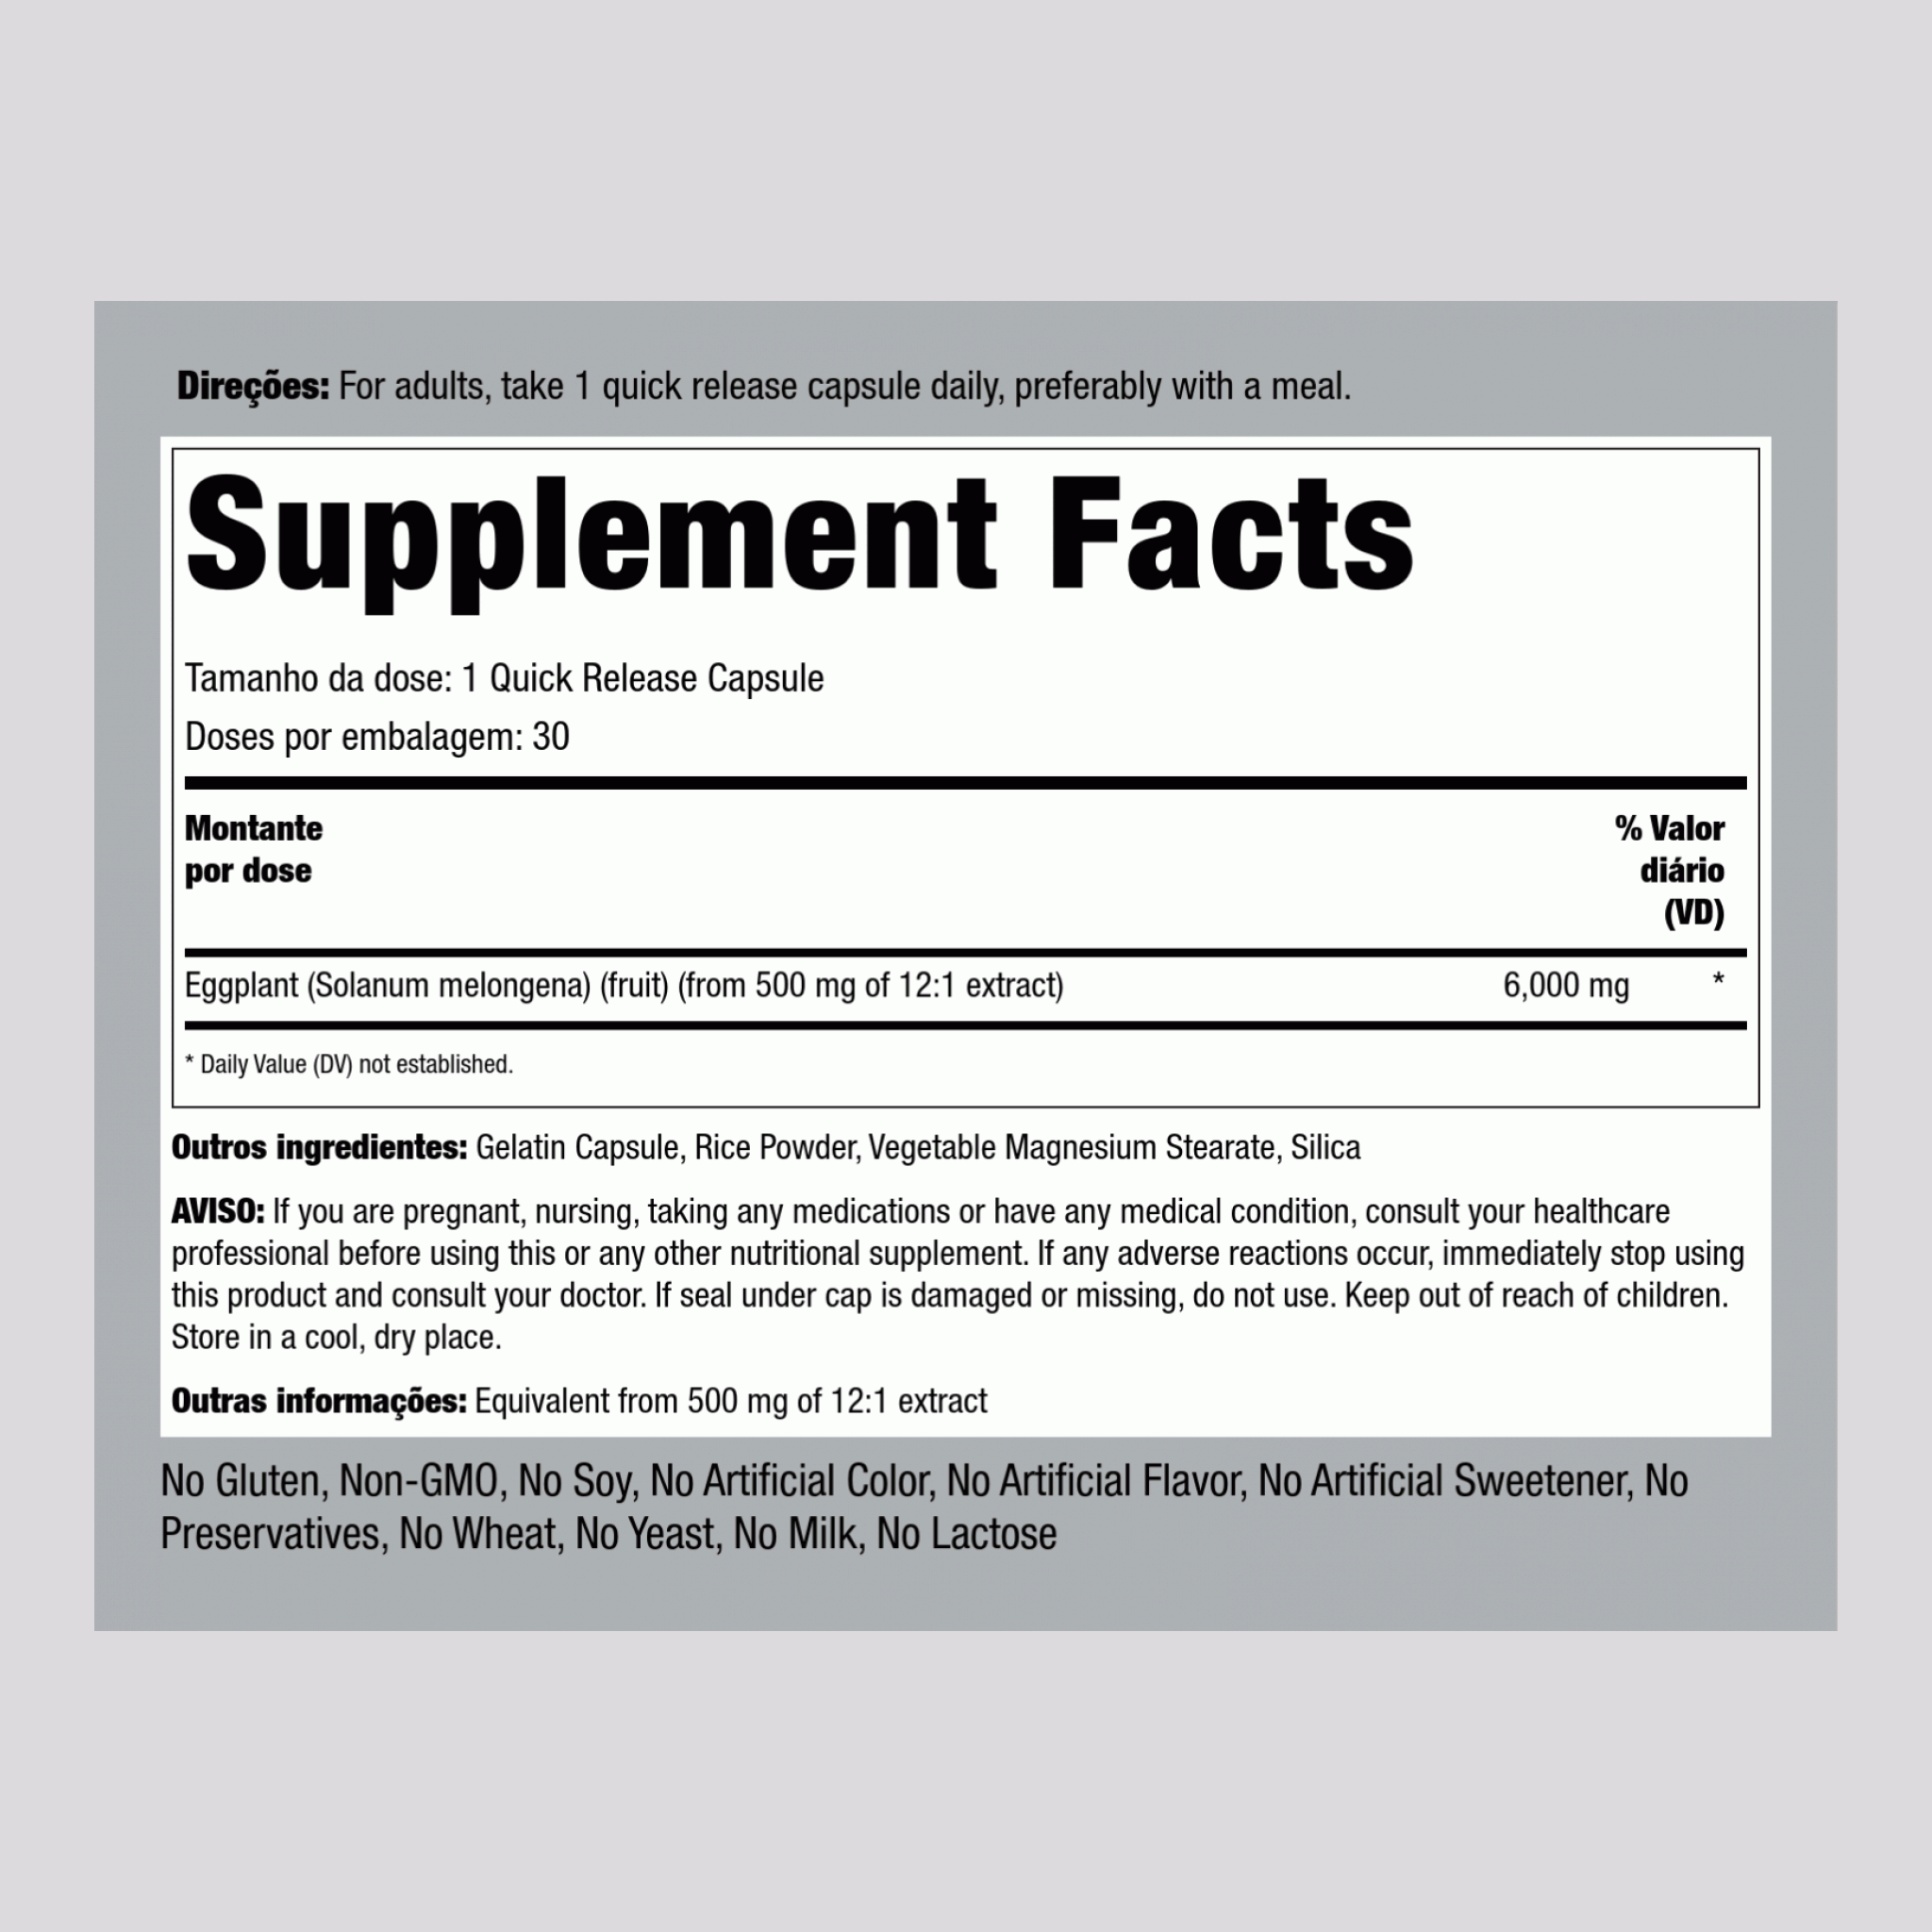 Extrait d'aubergine,  6000 mg 30 Gélules à libération rapide 2 Bouteilles